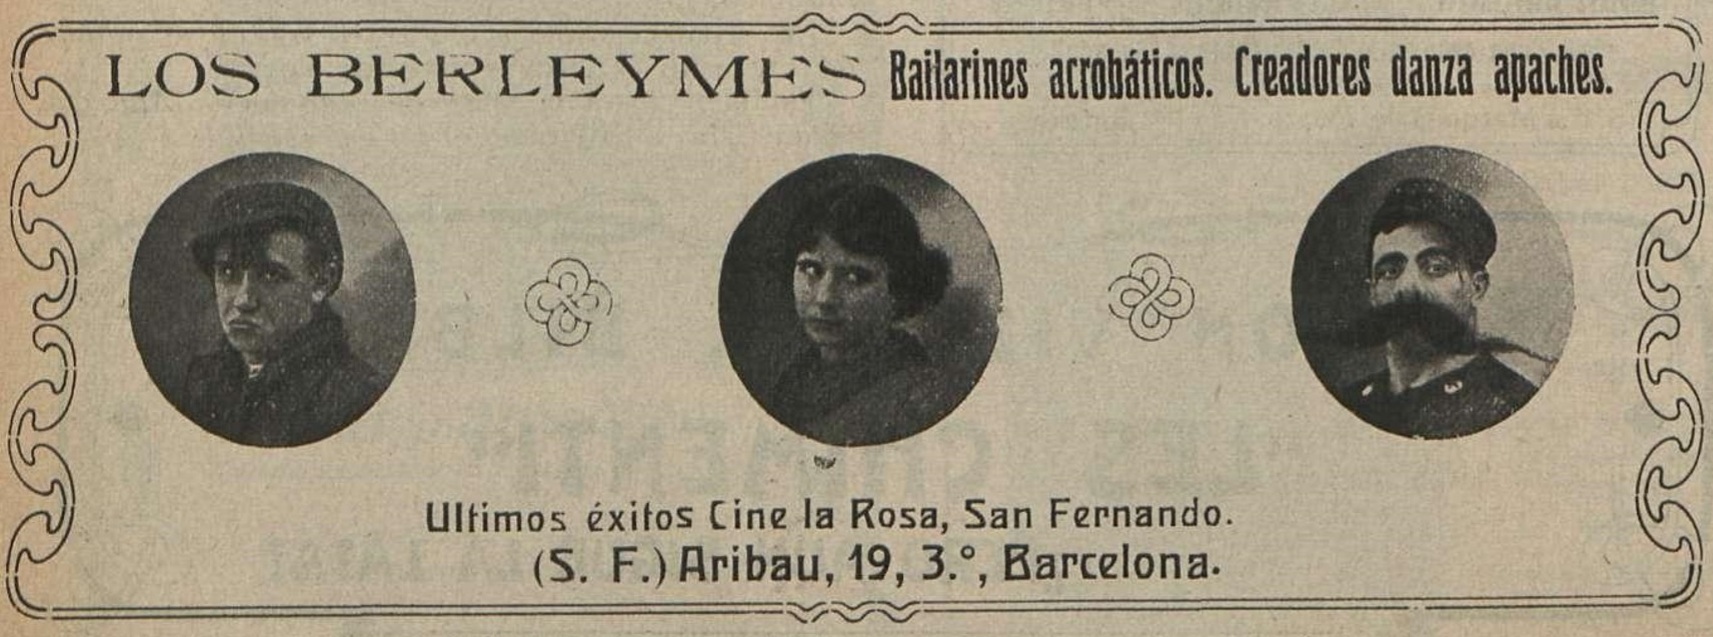 Los Berleymes actuaron por primera vez en 1913, antes de que el Cine La Rosa pasara a ser Cine Salón.